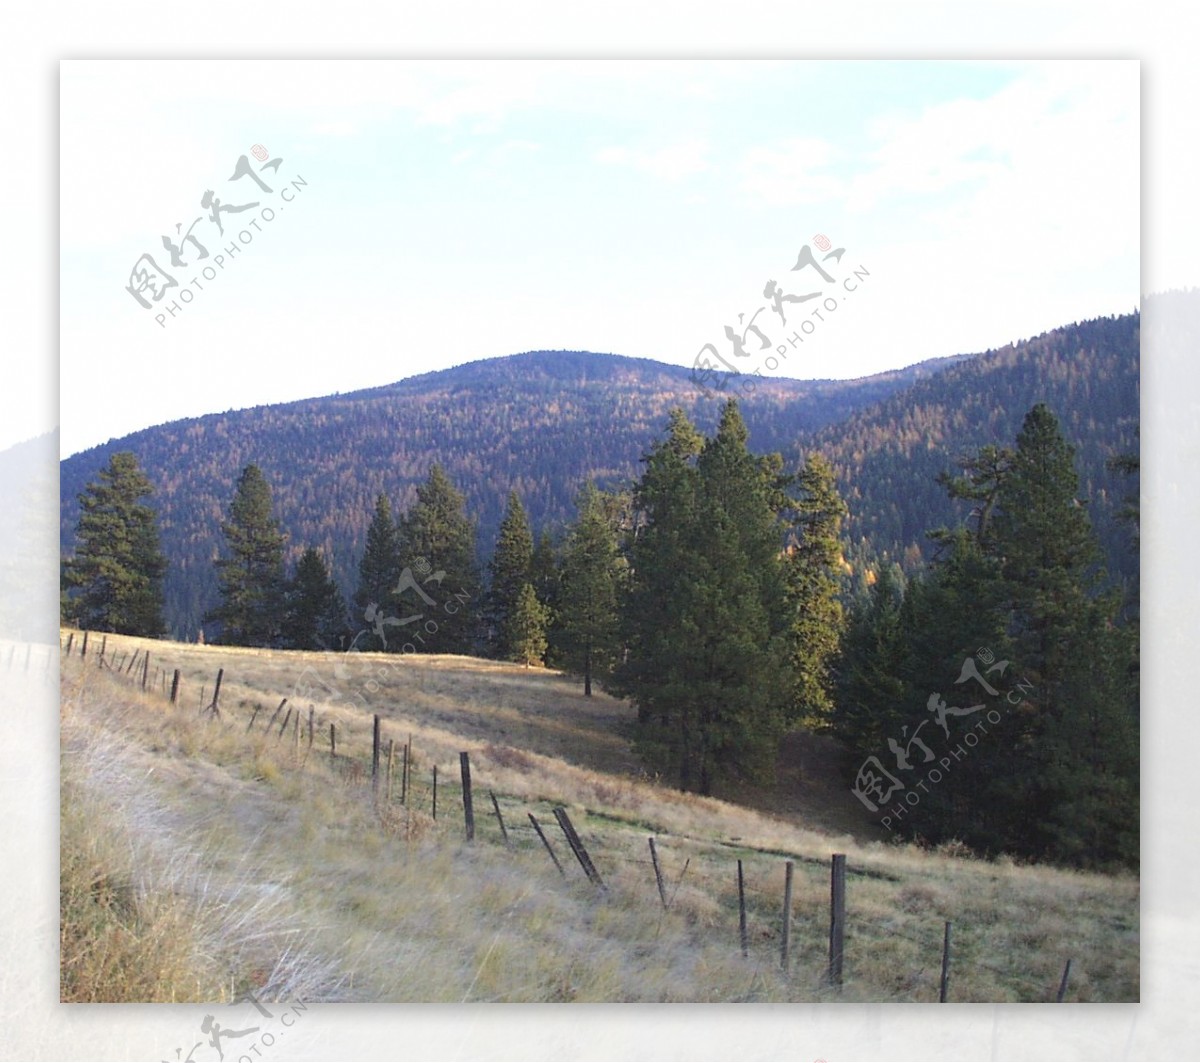 山区草木自然风景贴图素材JPG0232